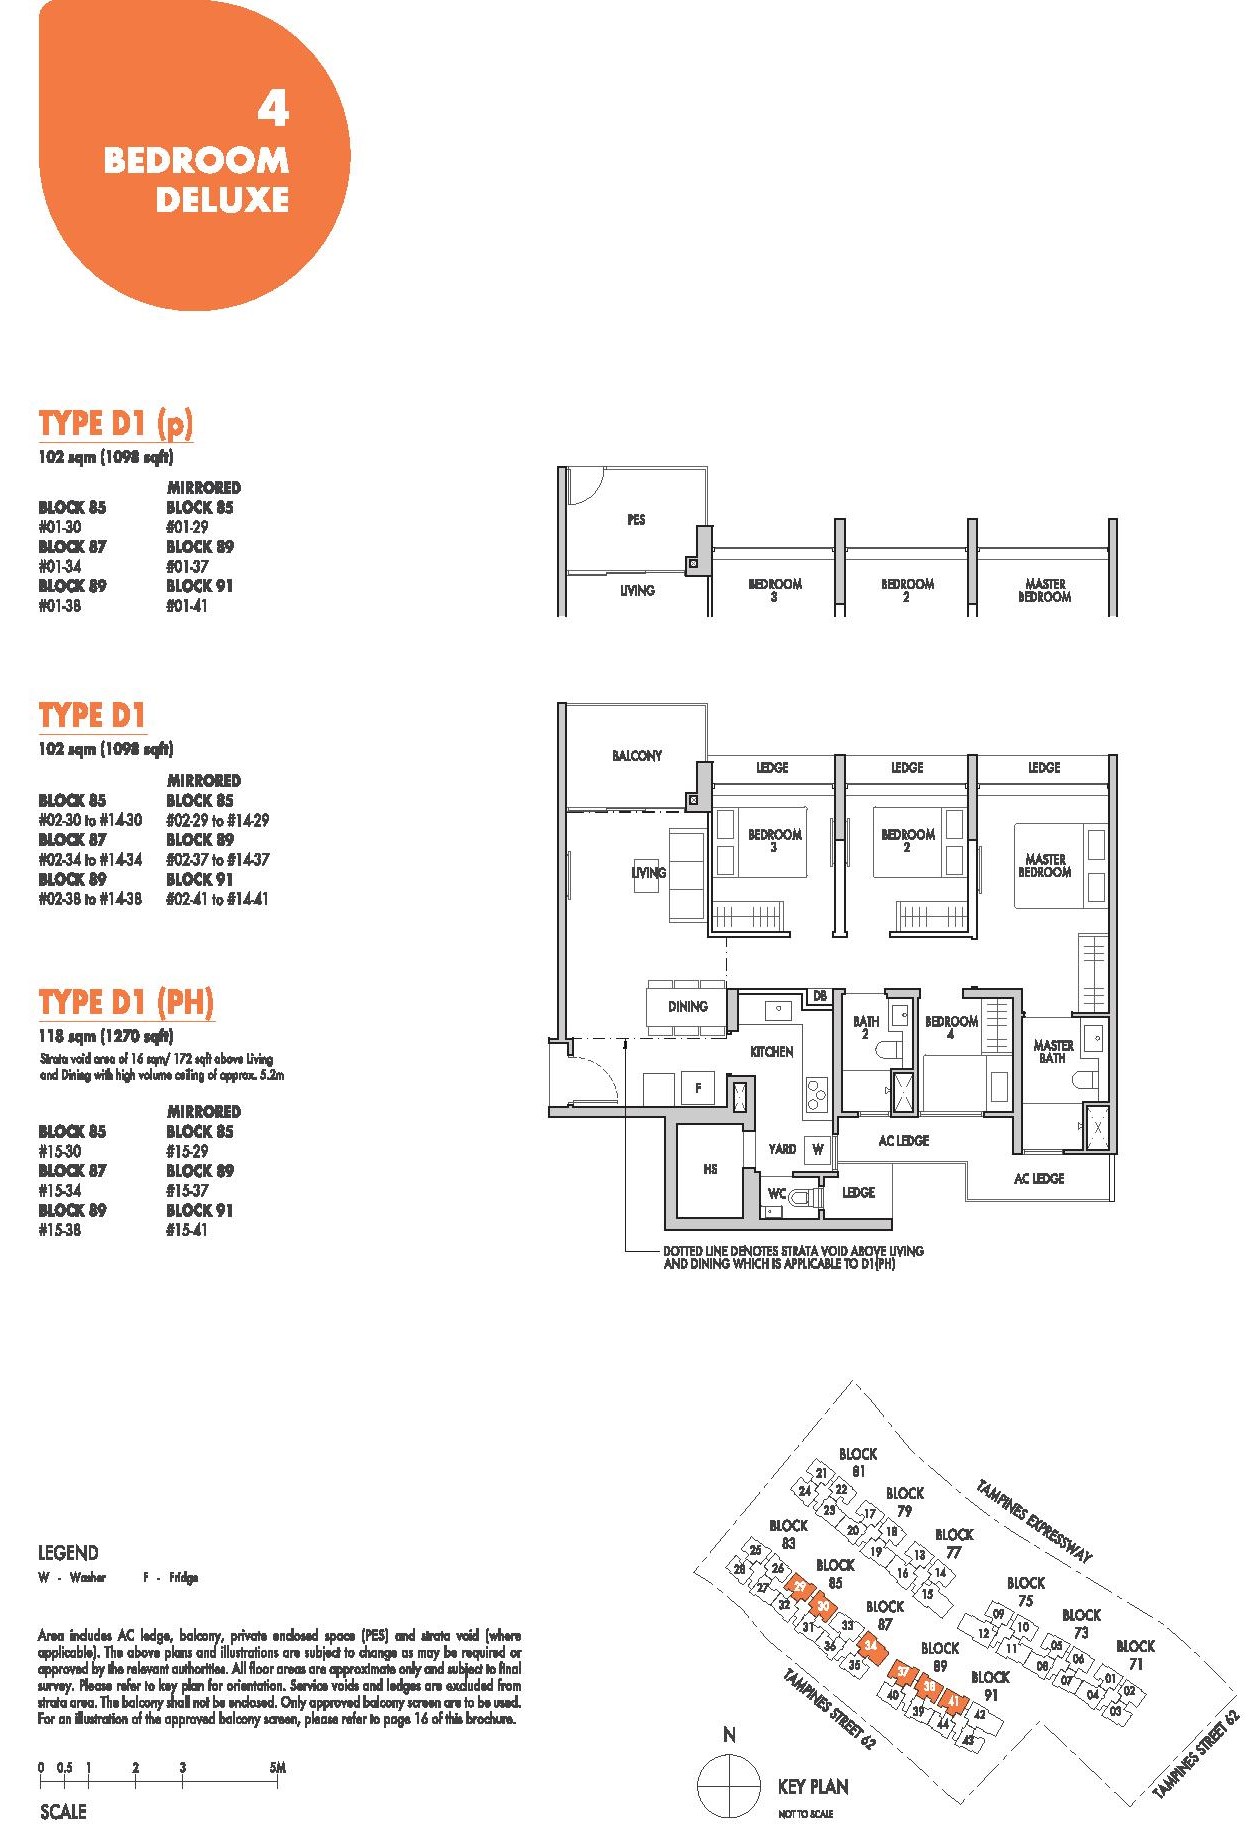 Tenet EC Floor Plan 4 Bedroom Deluxe Type D1 102 Sqm 1098 Sqft